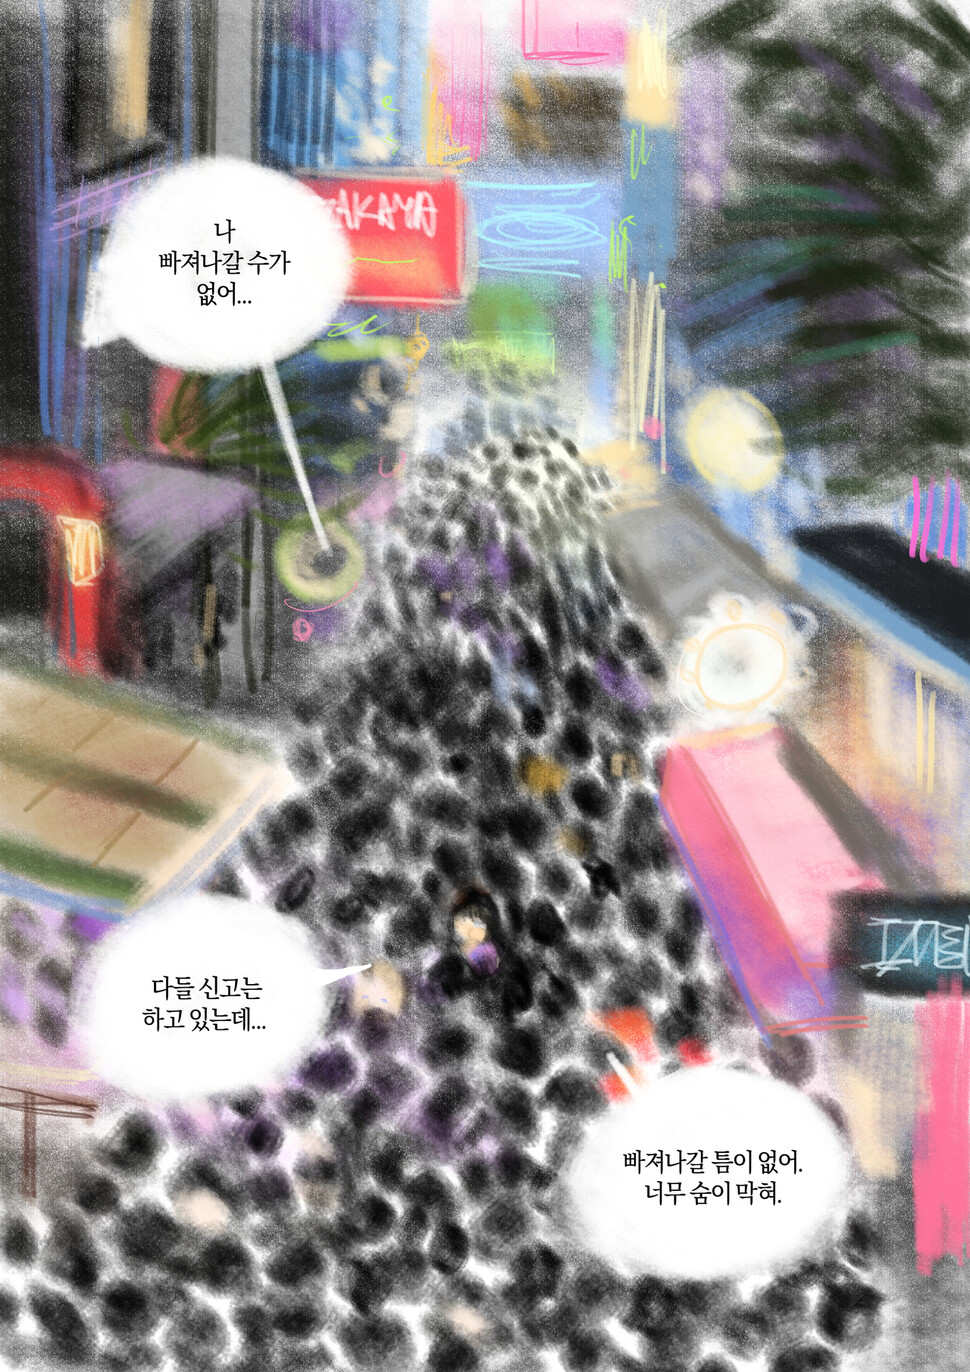 한국 사회의 ‘구조와 탈출’ 경험/기억에 대해 학생 미르가 그린 만화 일부. 미르